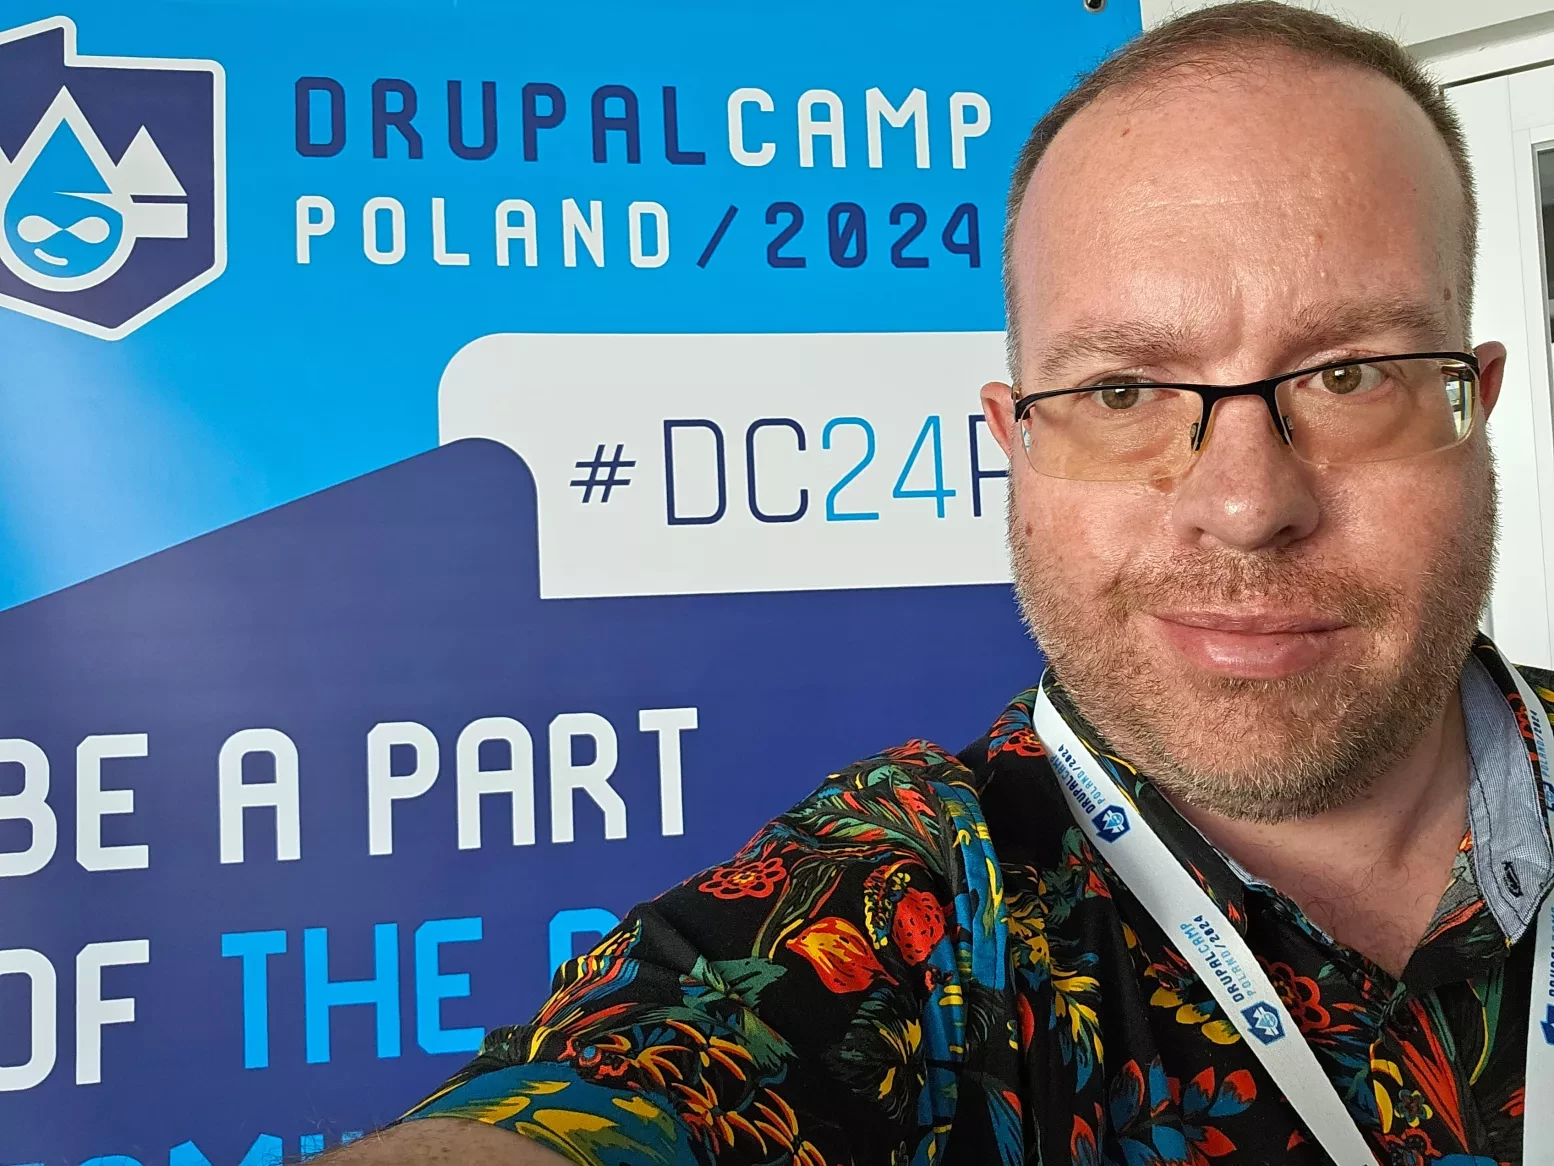 DrupalCamp Poland 2024